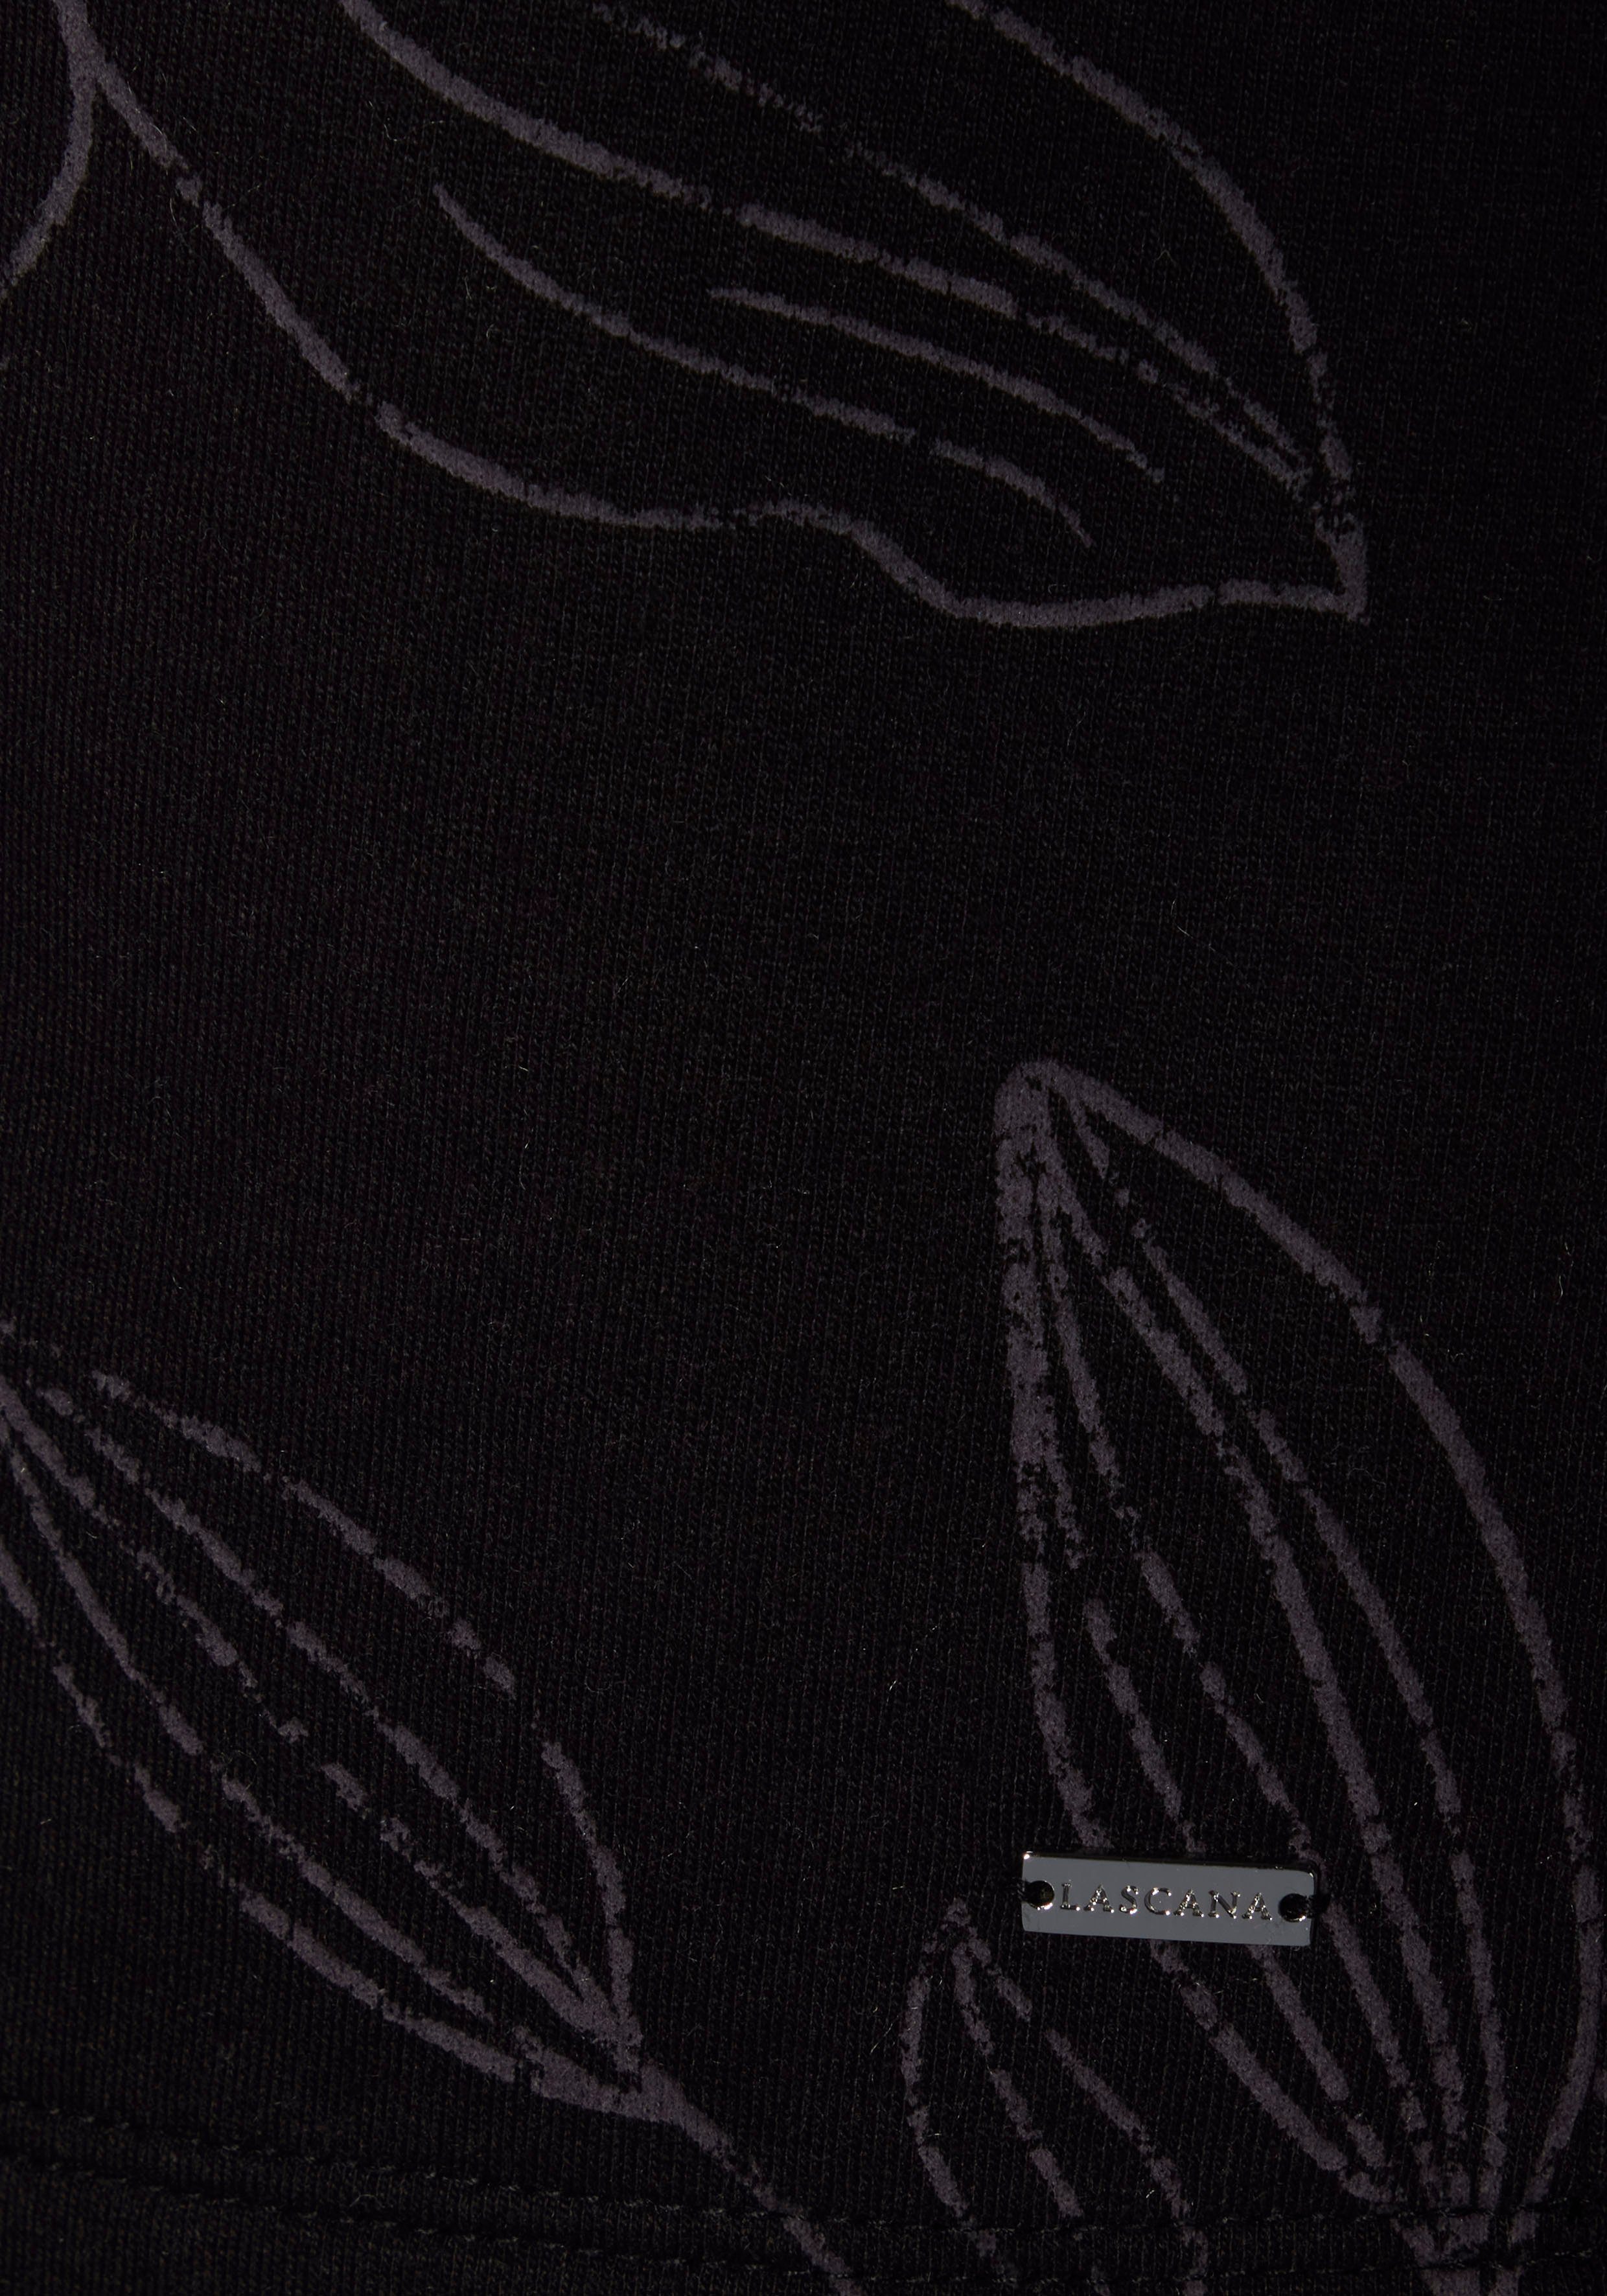 mit Sweatshirt schwarz-gemustert floralem Alloverdruck, Loungewear, Loungeanzug LASCANA